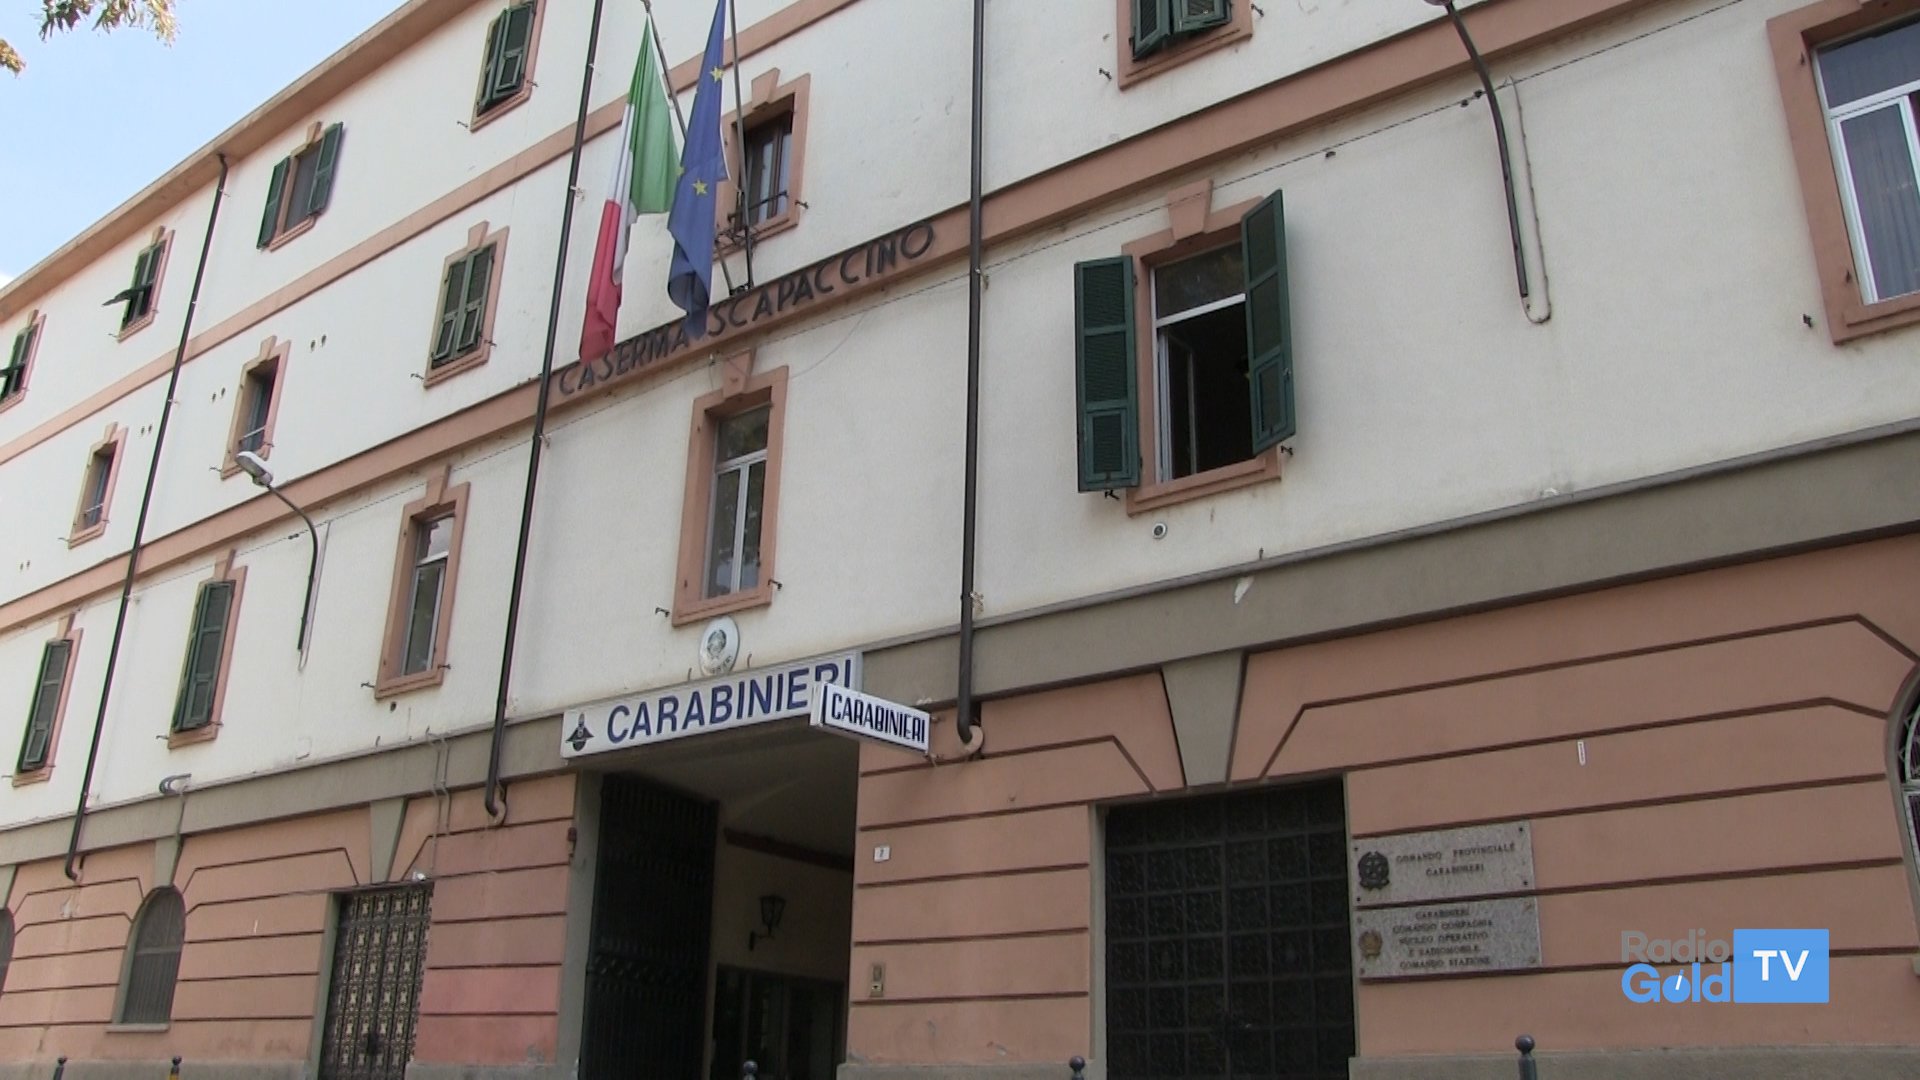 Omicidio di via Parma: riaperte le indagini dopo 14 anni